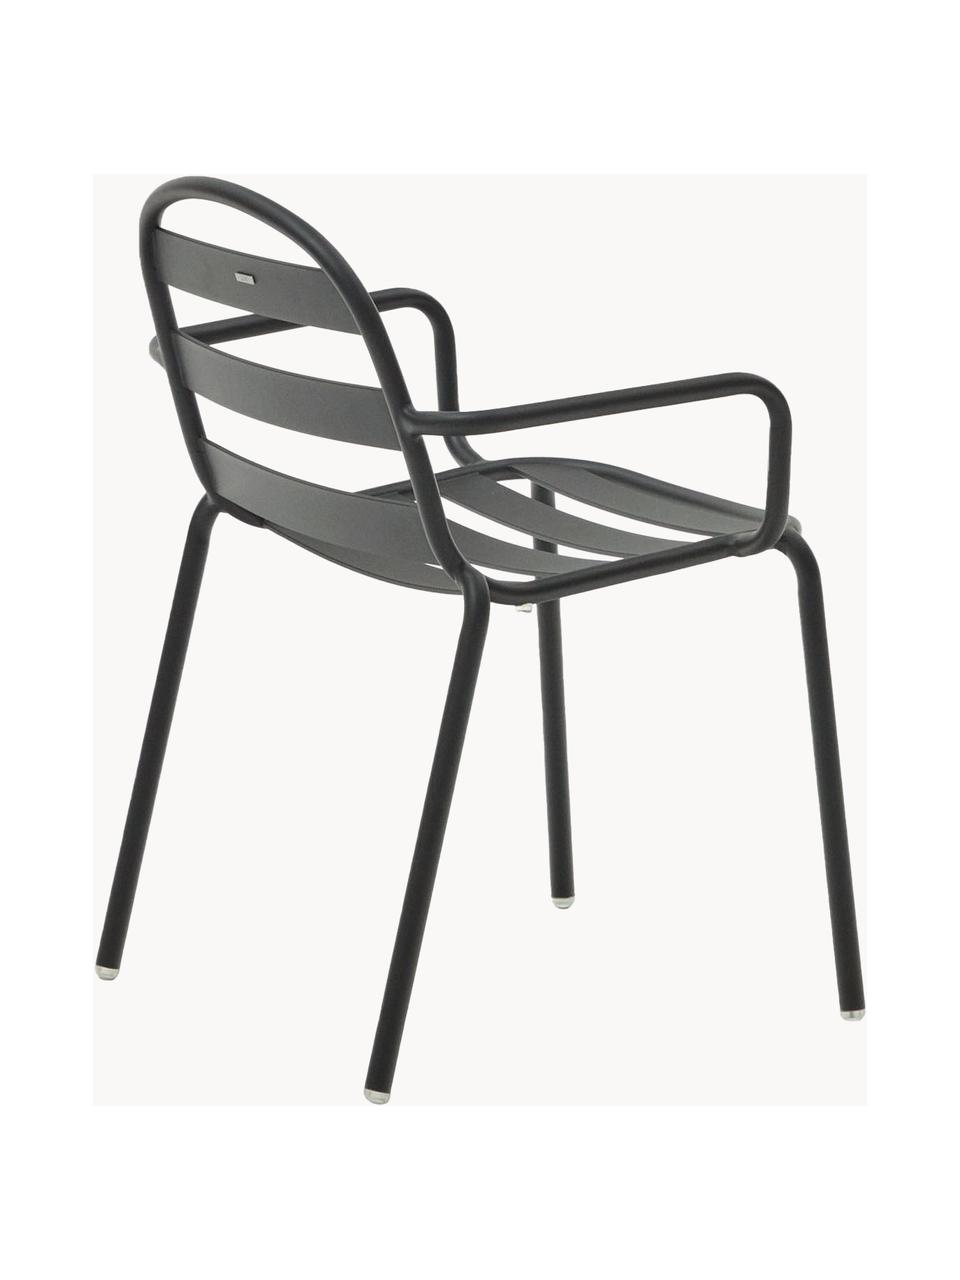 Ogrodowe krzesło z podłokietnikami Joncols, Aluminium malowane proszkowo, Antracytowy, S 61 x G 58 cm